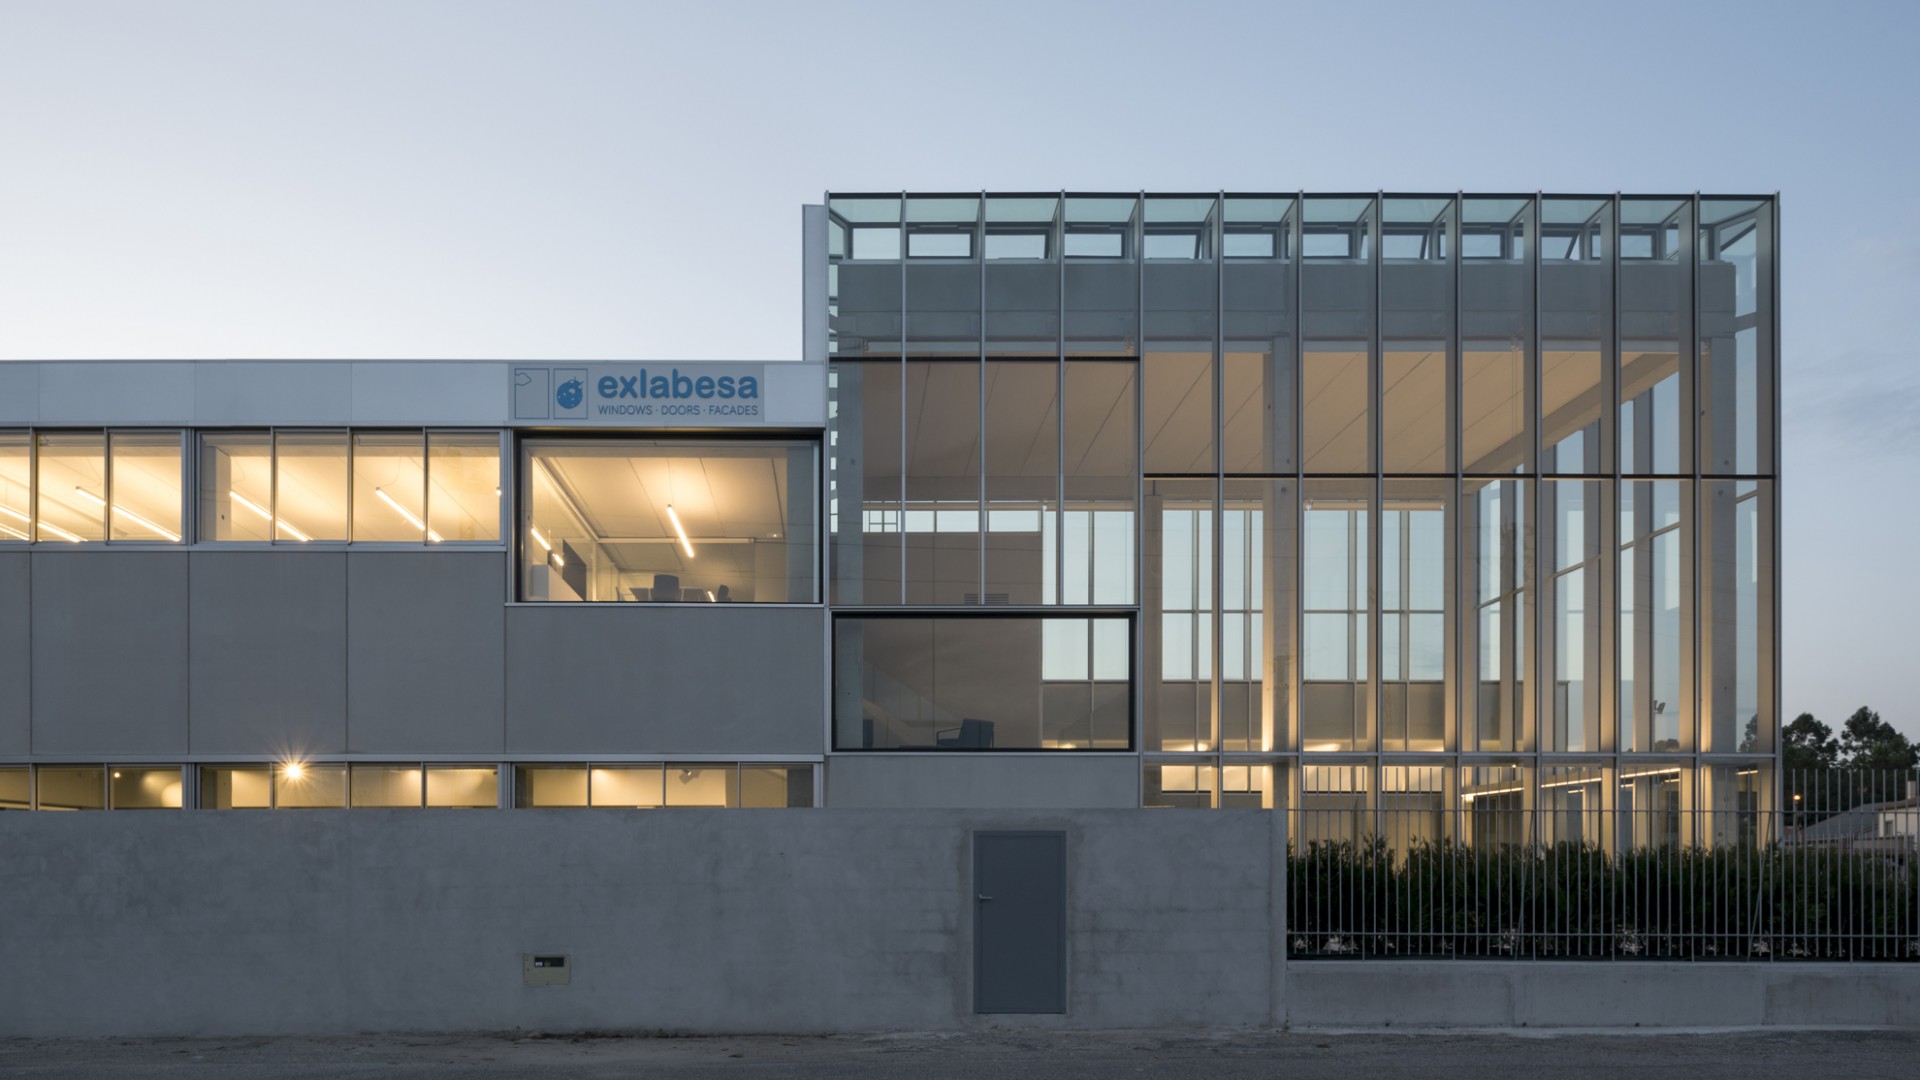 Exlabesa Architectural Lab